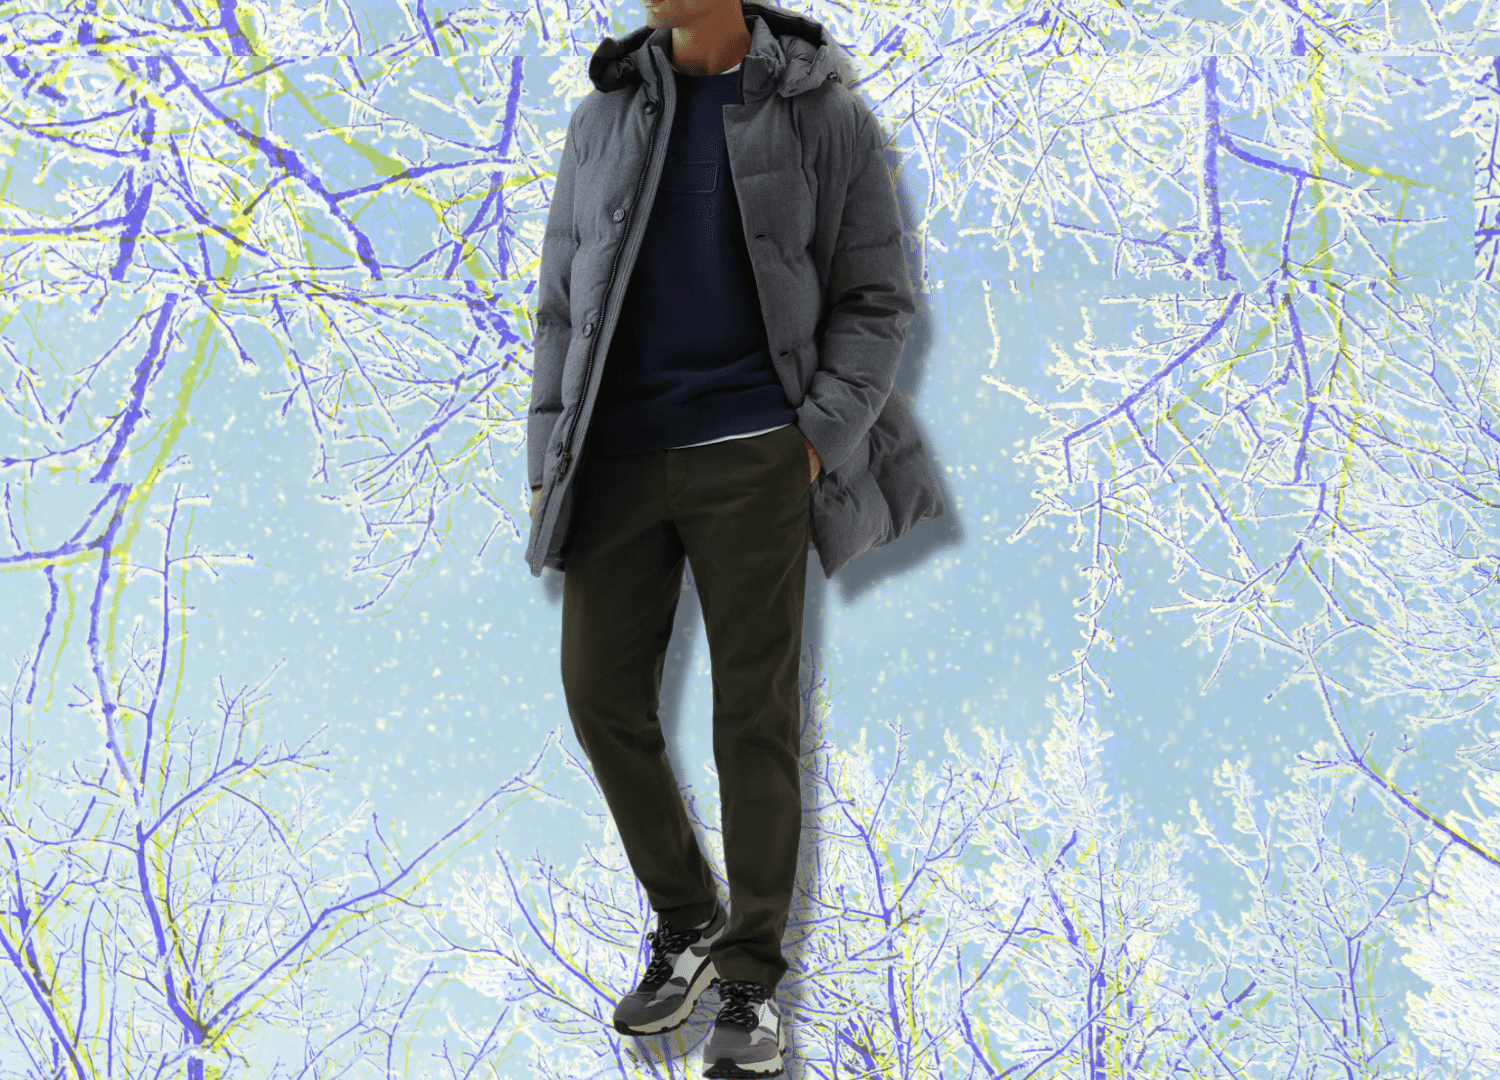 stylish warm winter jackets